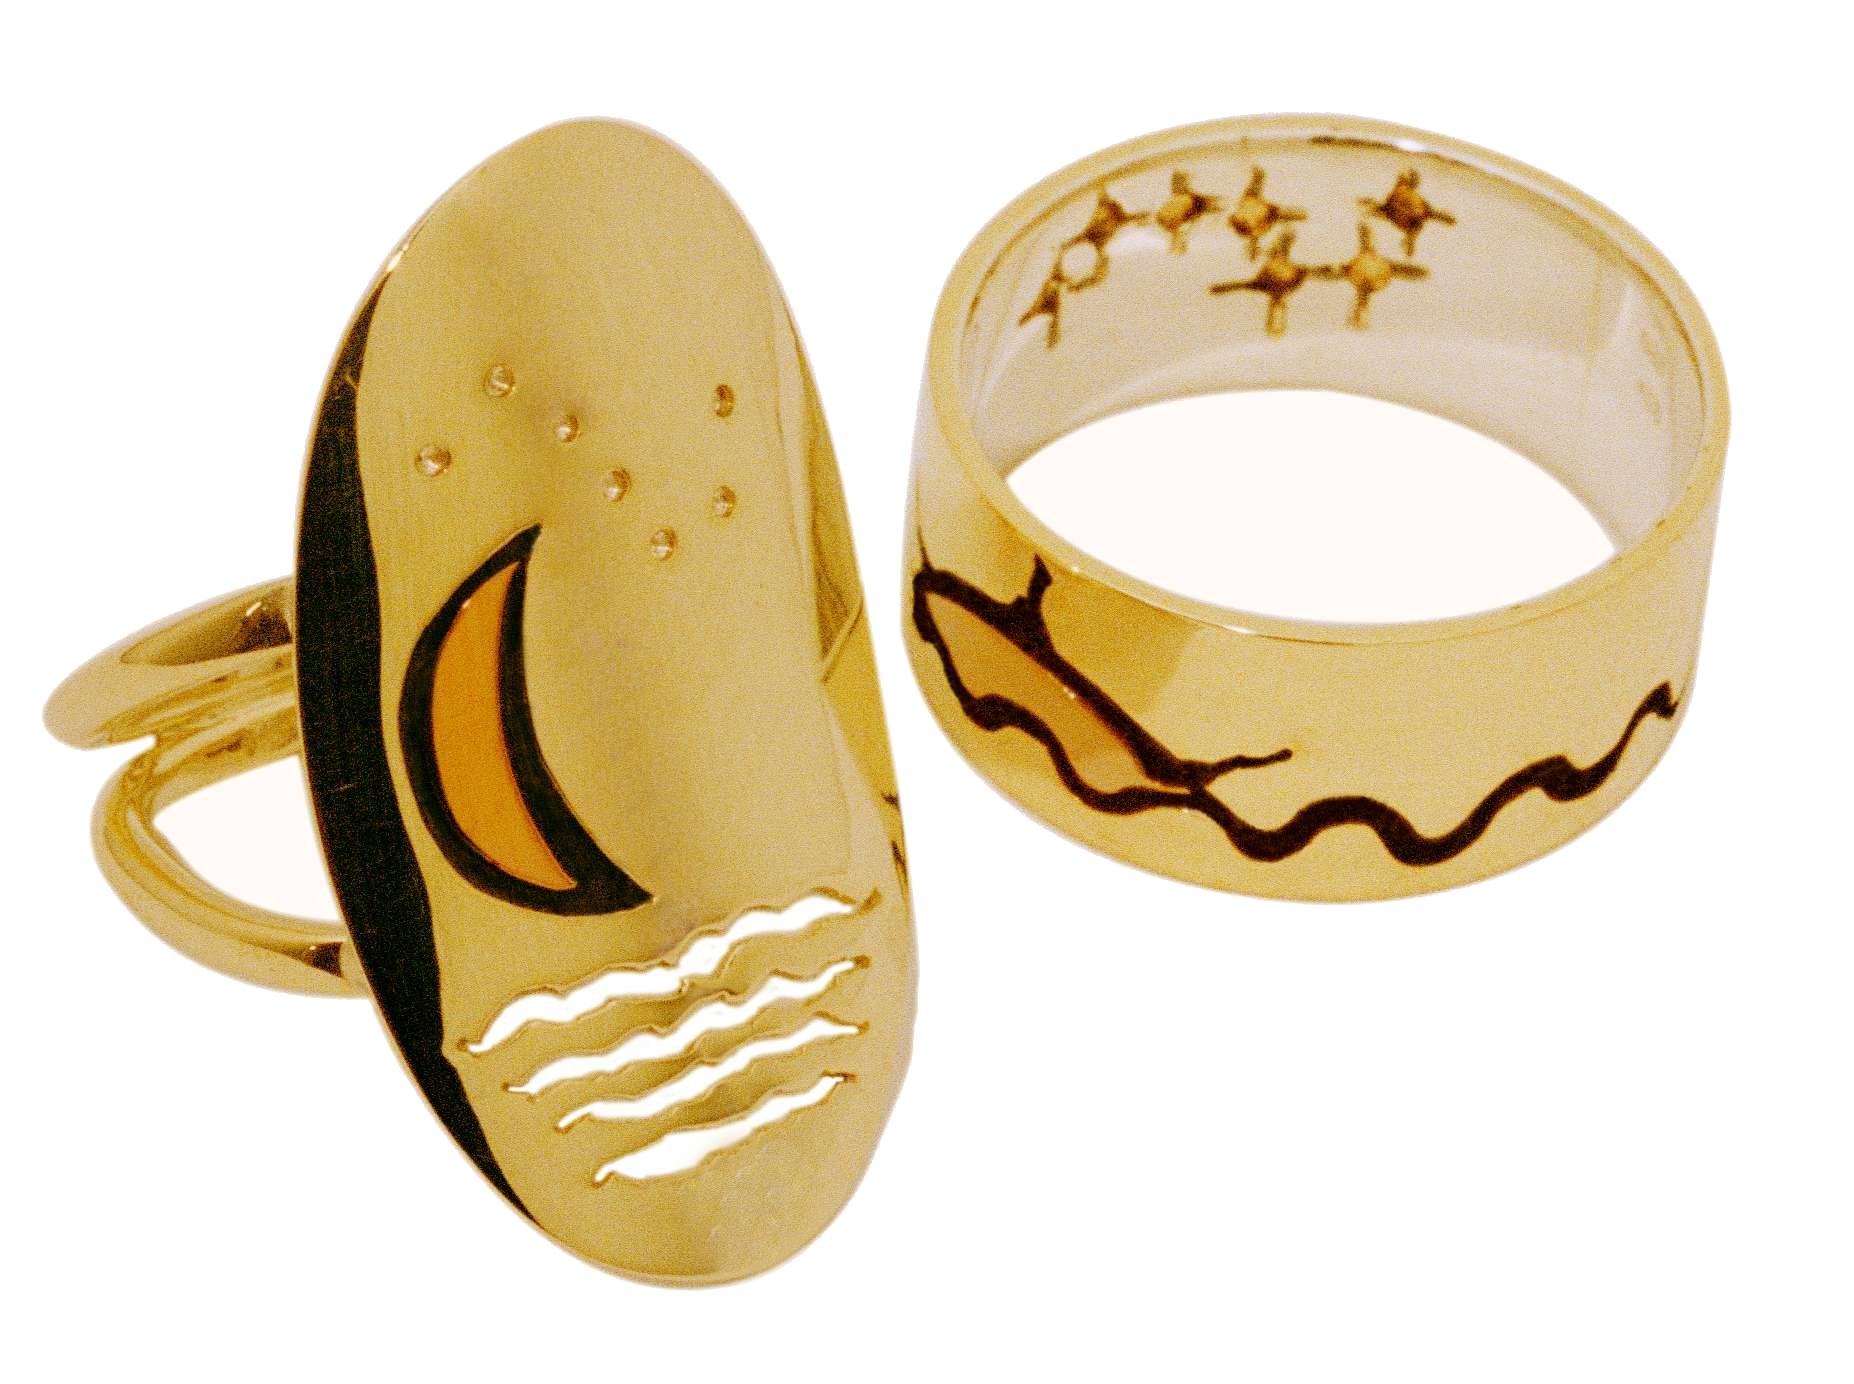 Edelsmid Zhaawano smeedde deze unieke ringenset 'De Wonderbaarlijke geschiedenis Van De Vissermarterster' uit geelgoud, roodgoud en zilver